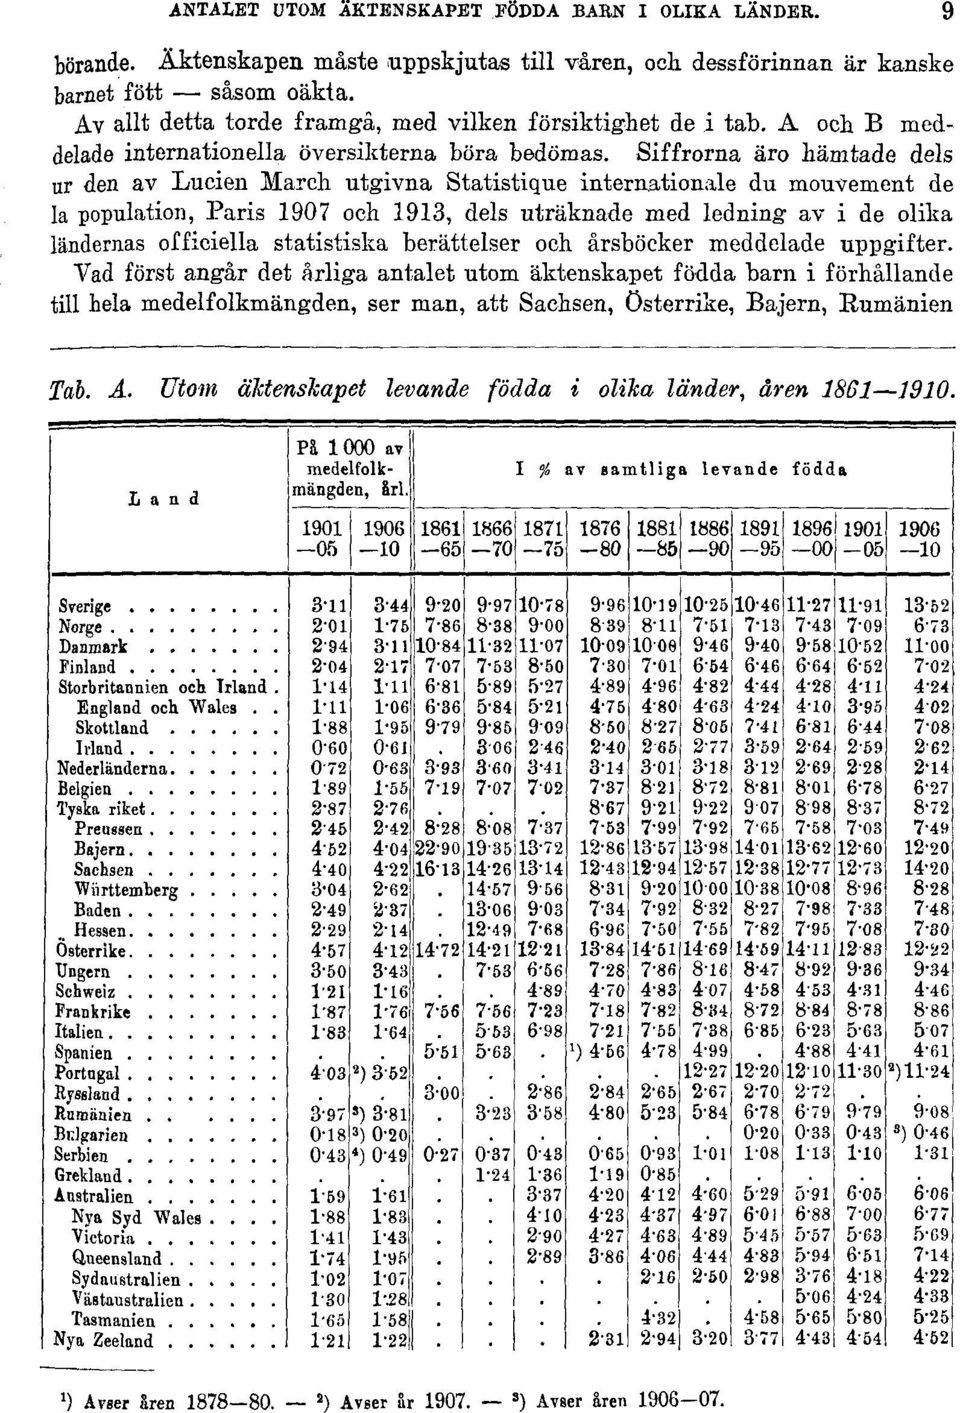 Siffrorna äro hämtade dels ur den av Lucien March utgivna Statistique internationale du mouvement de la population, Paris 1907 och 1913, dels uträknade med ledning av i de olika ländernas officiella